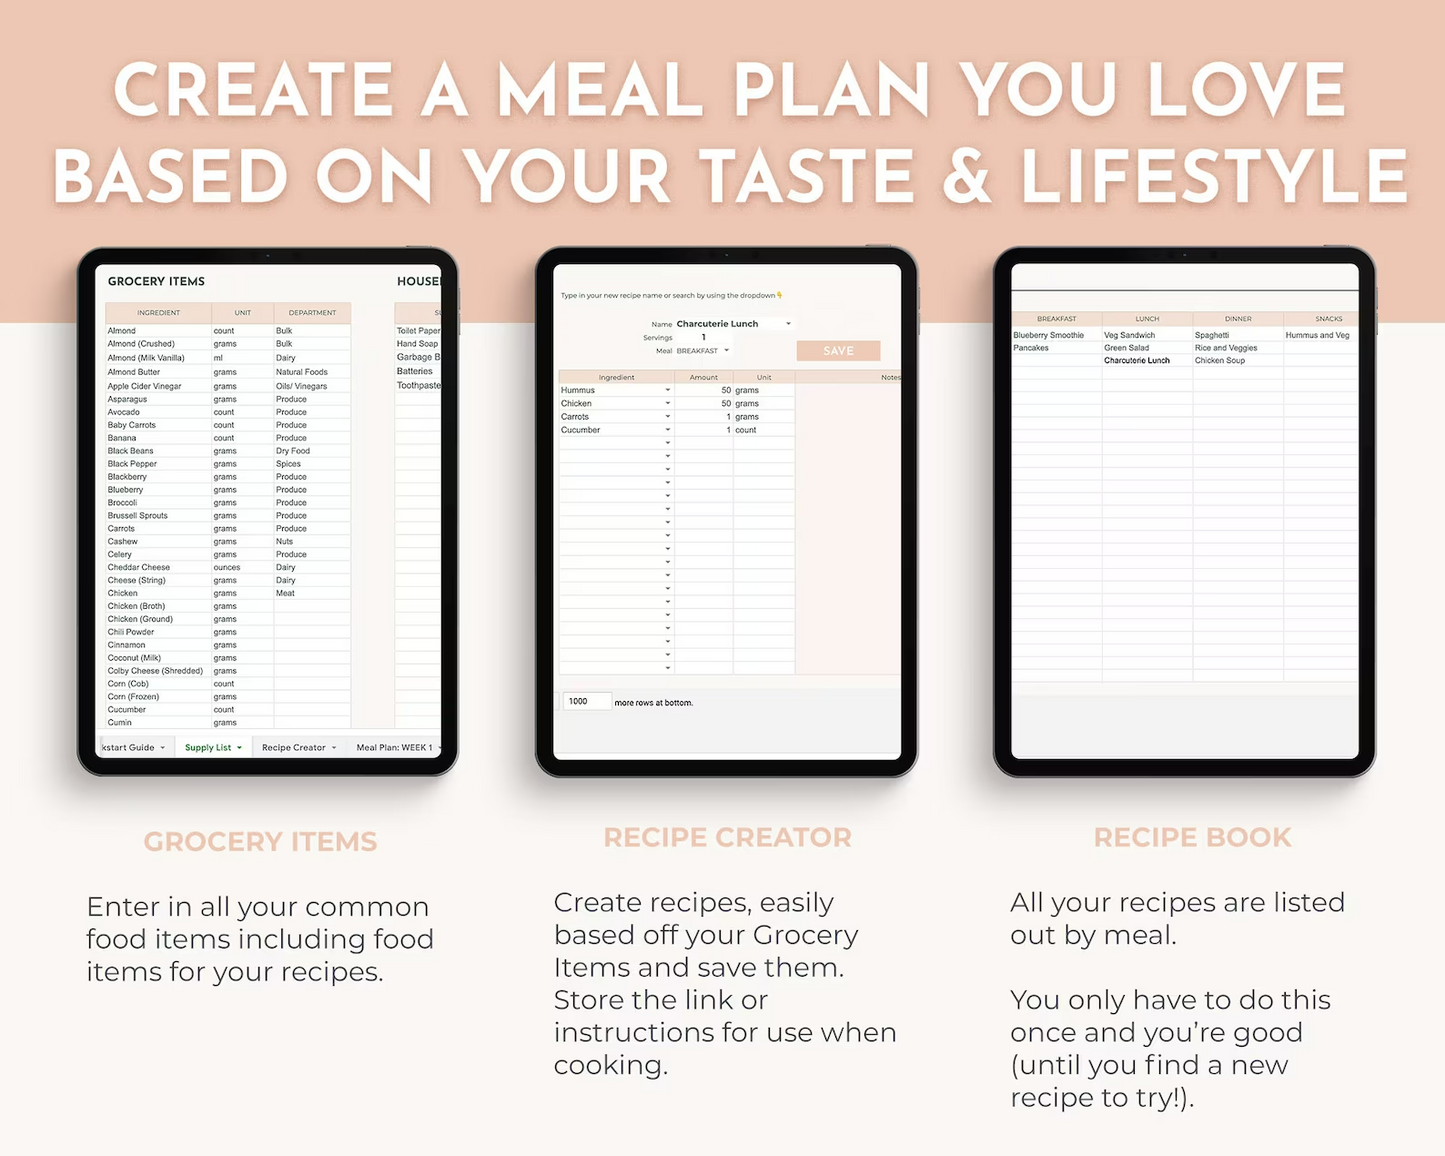 Digital Meal Planner